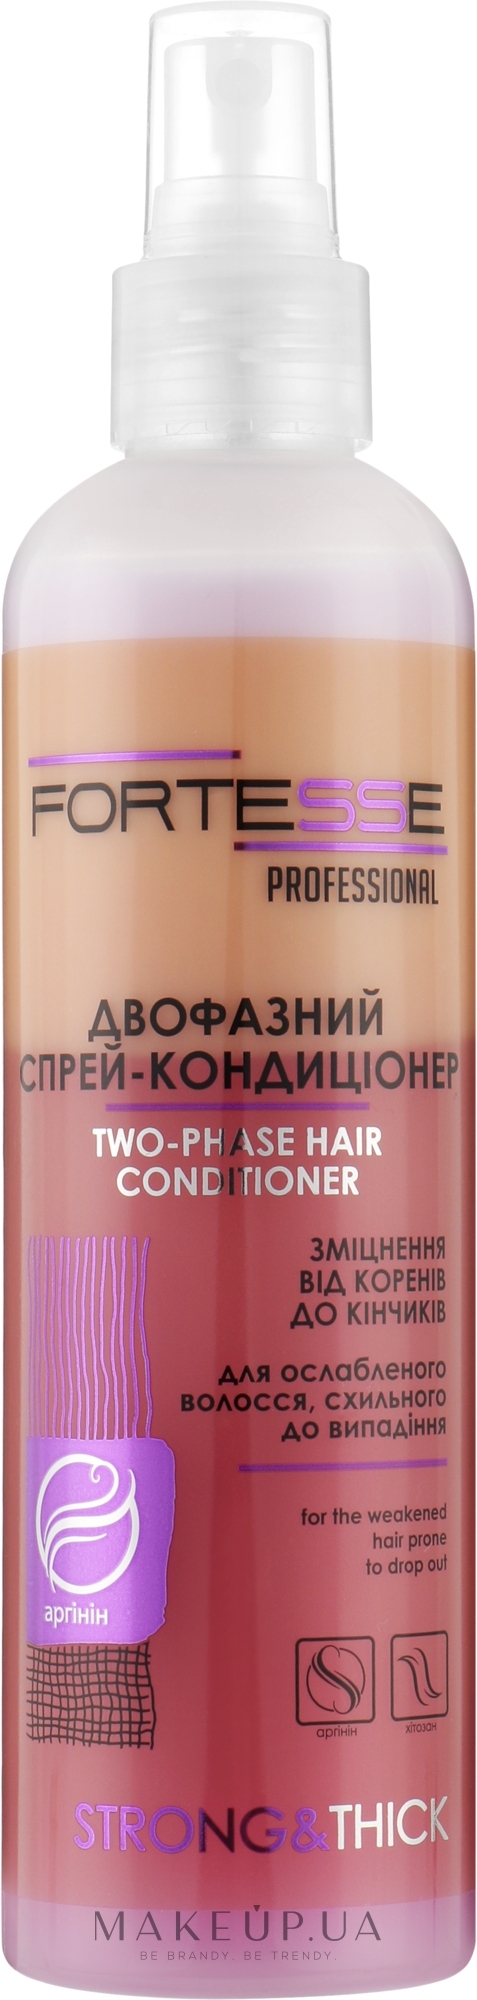 Двофазний зміцнювальний спрей-кондиціонер для ослабленого волосся, схильного до випадіння - Fortesse Professional Strong & Thick Duo-Phase Hair Conditioner — фото 250ml